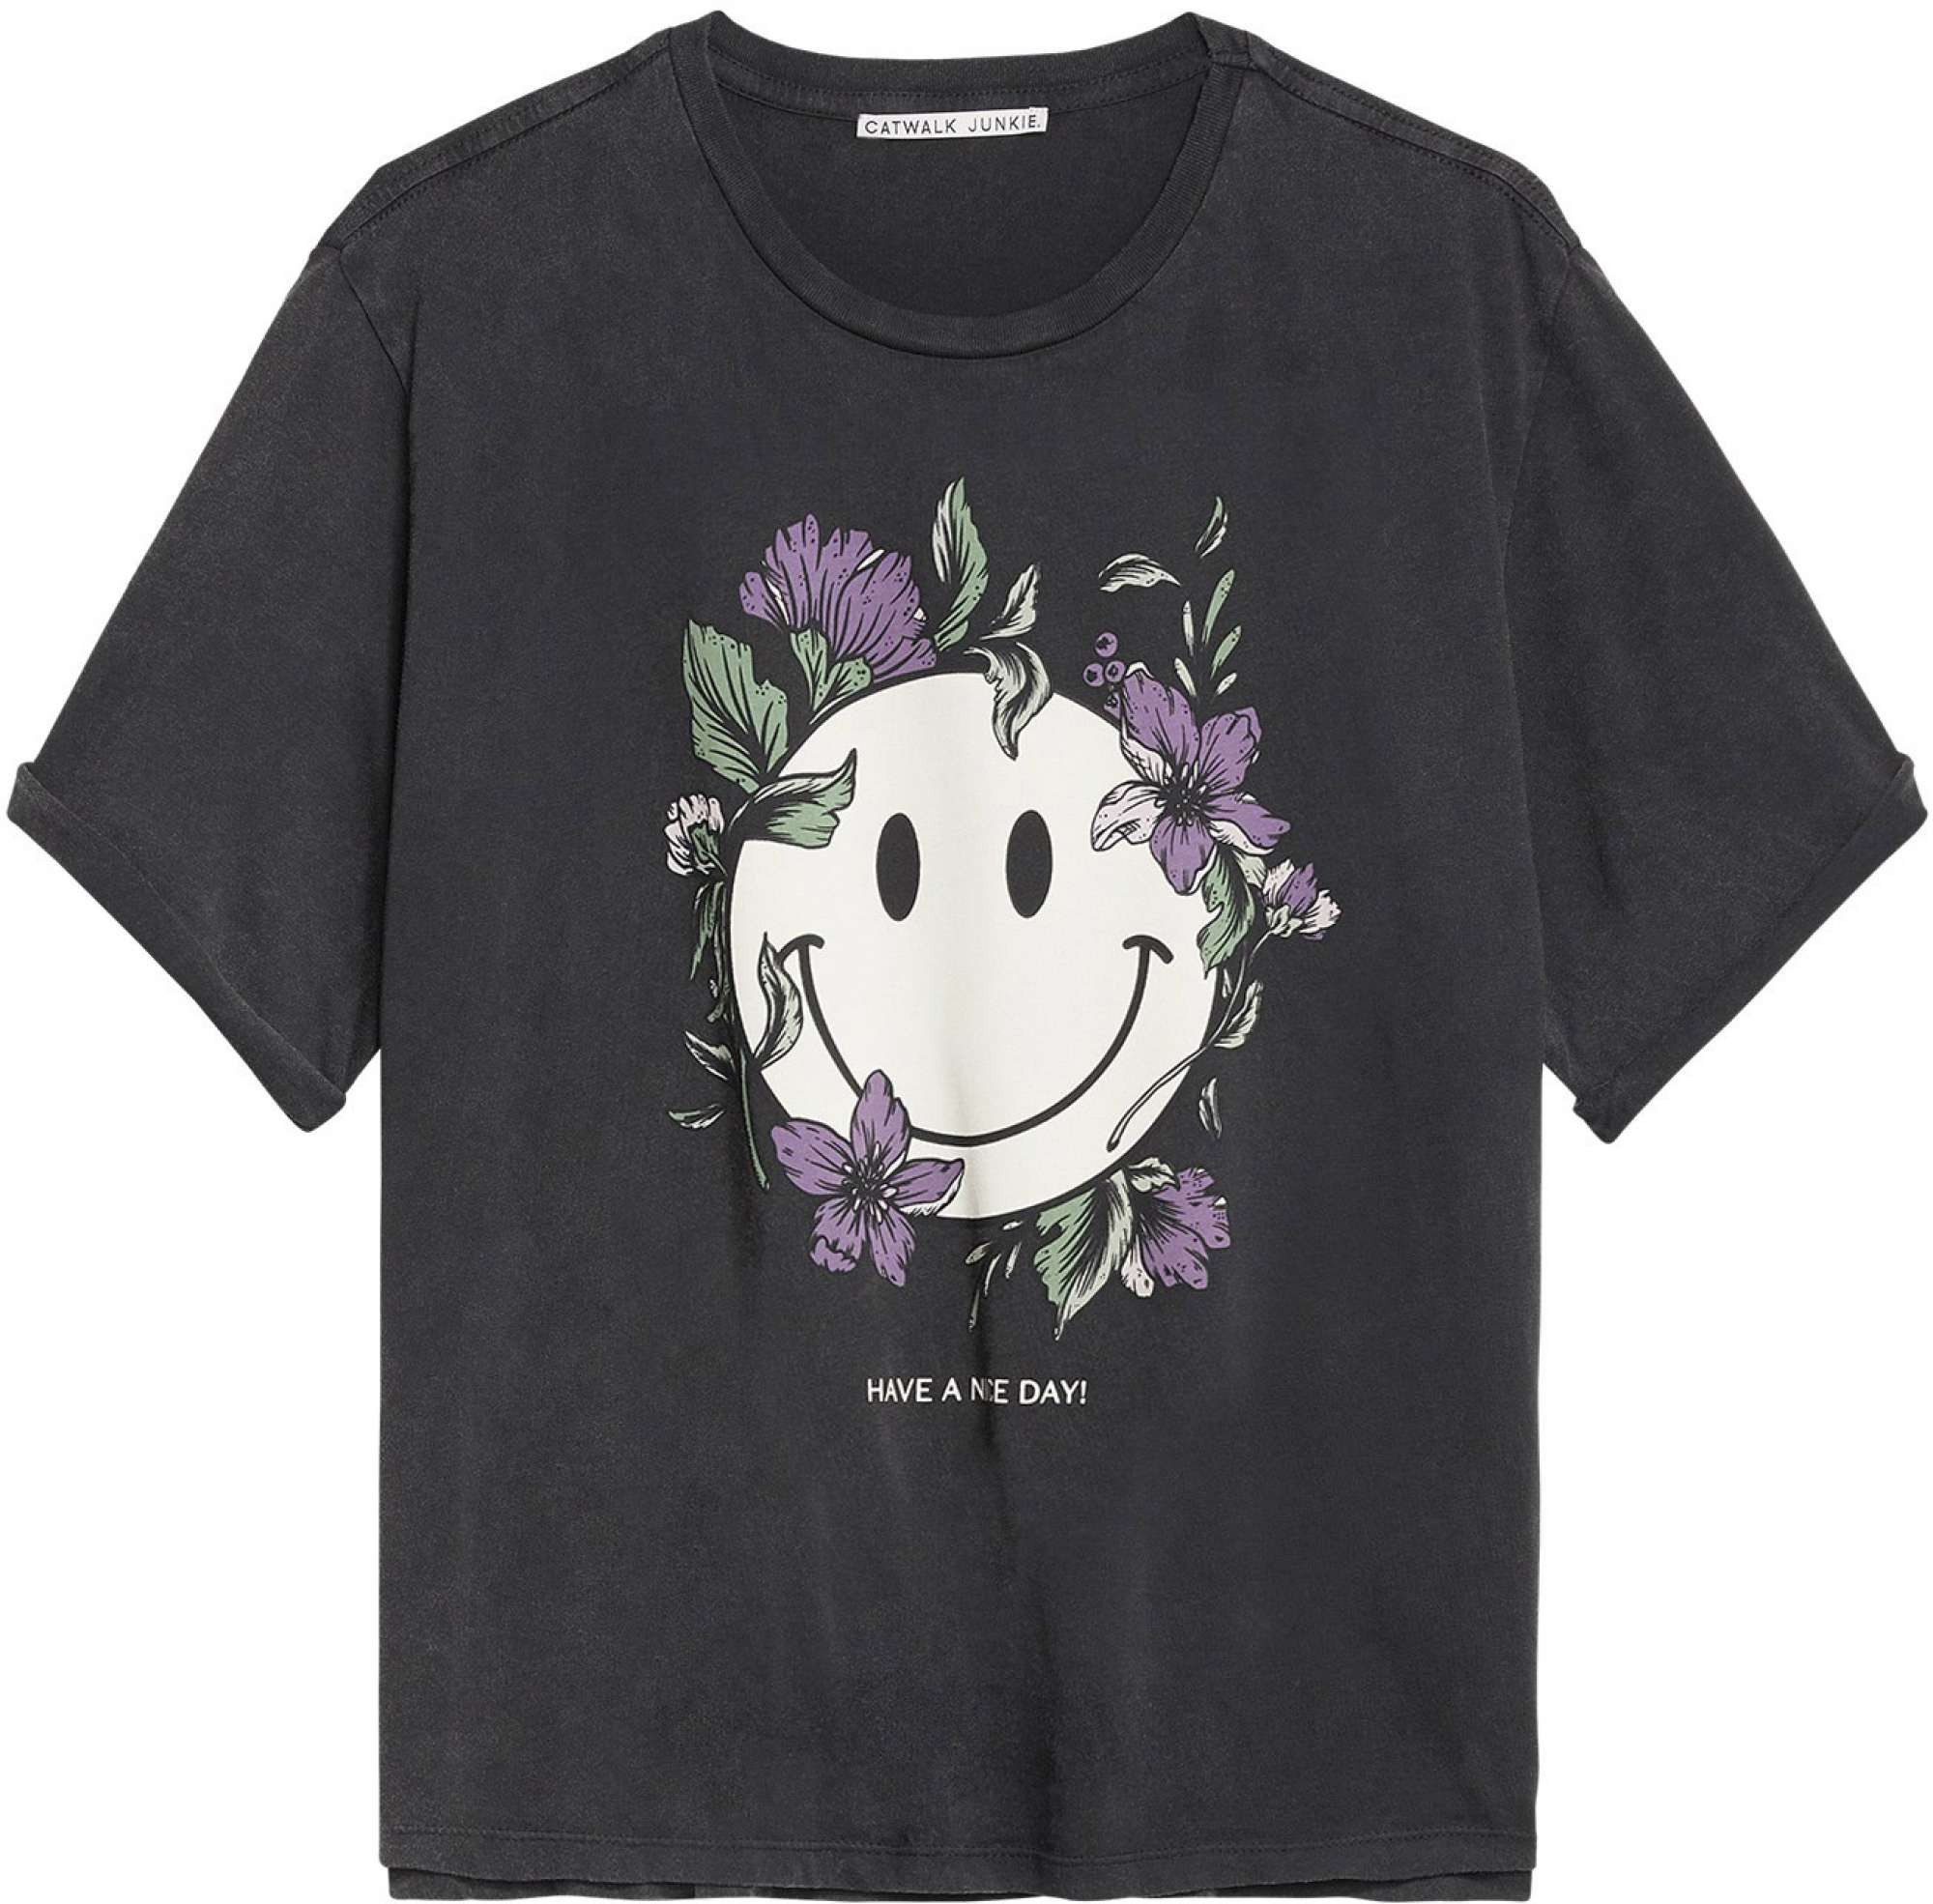 Catwalk Junkie T-shirt smiling flower dark grey StyleSearch